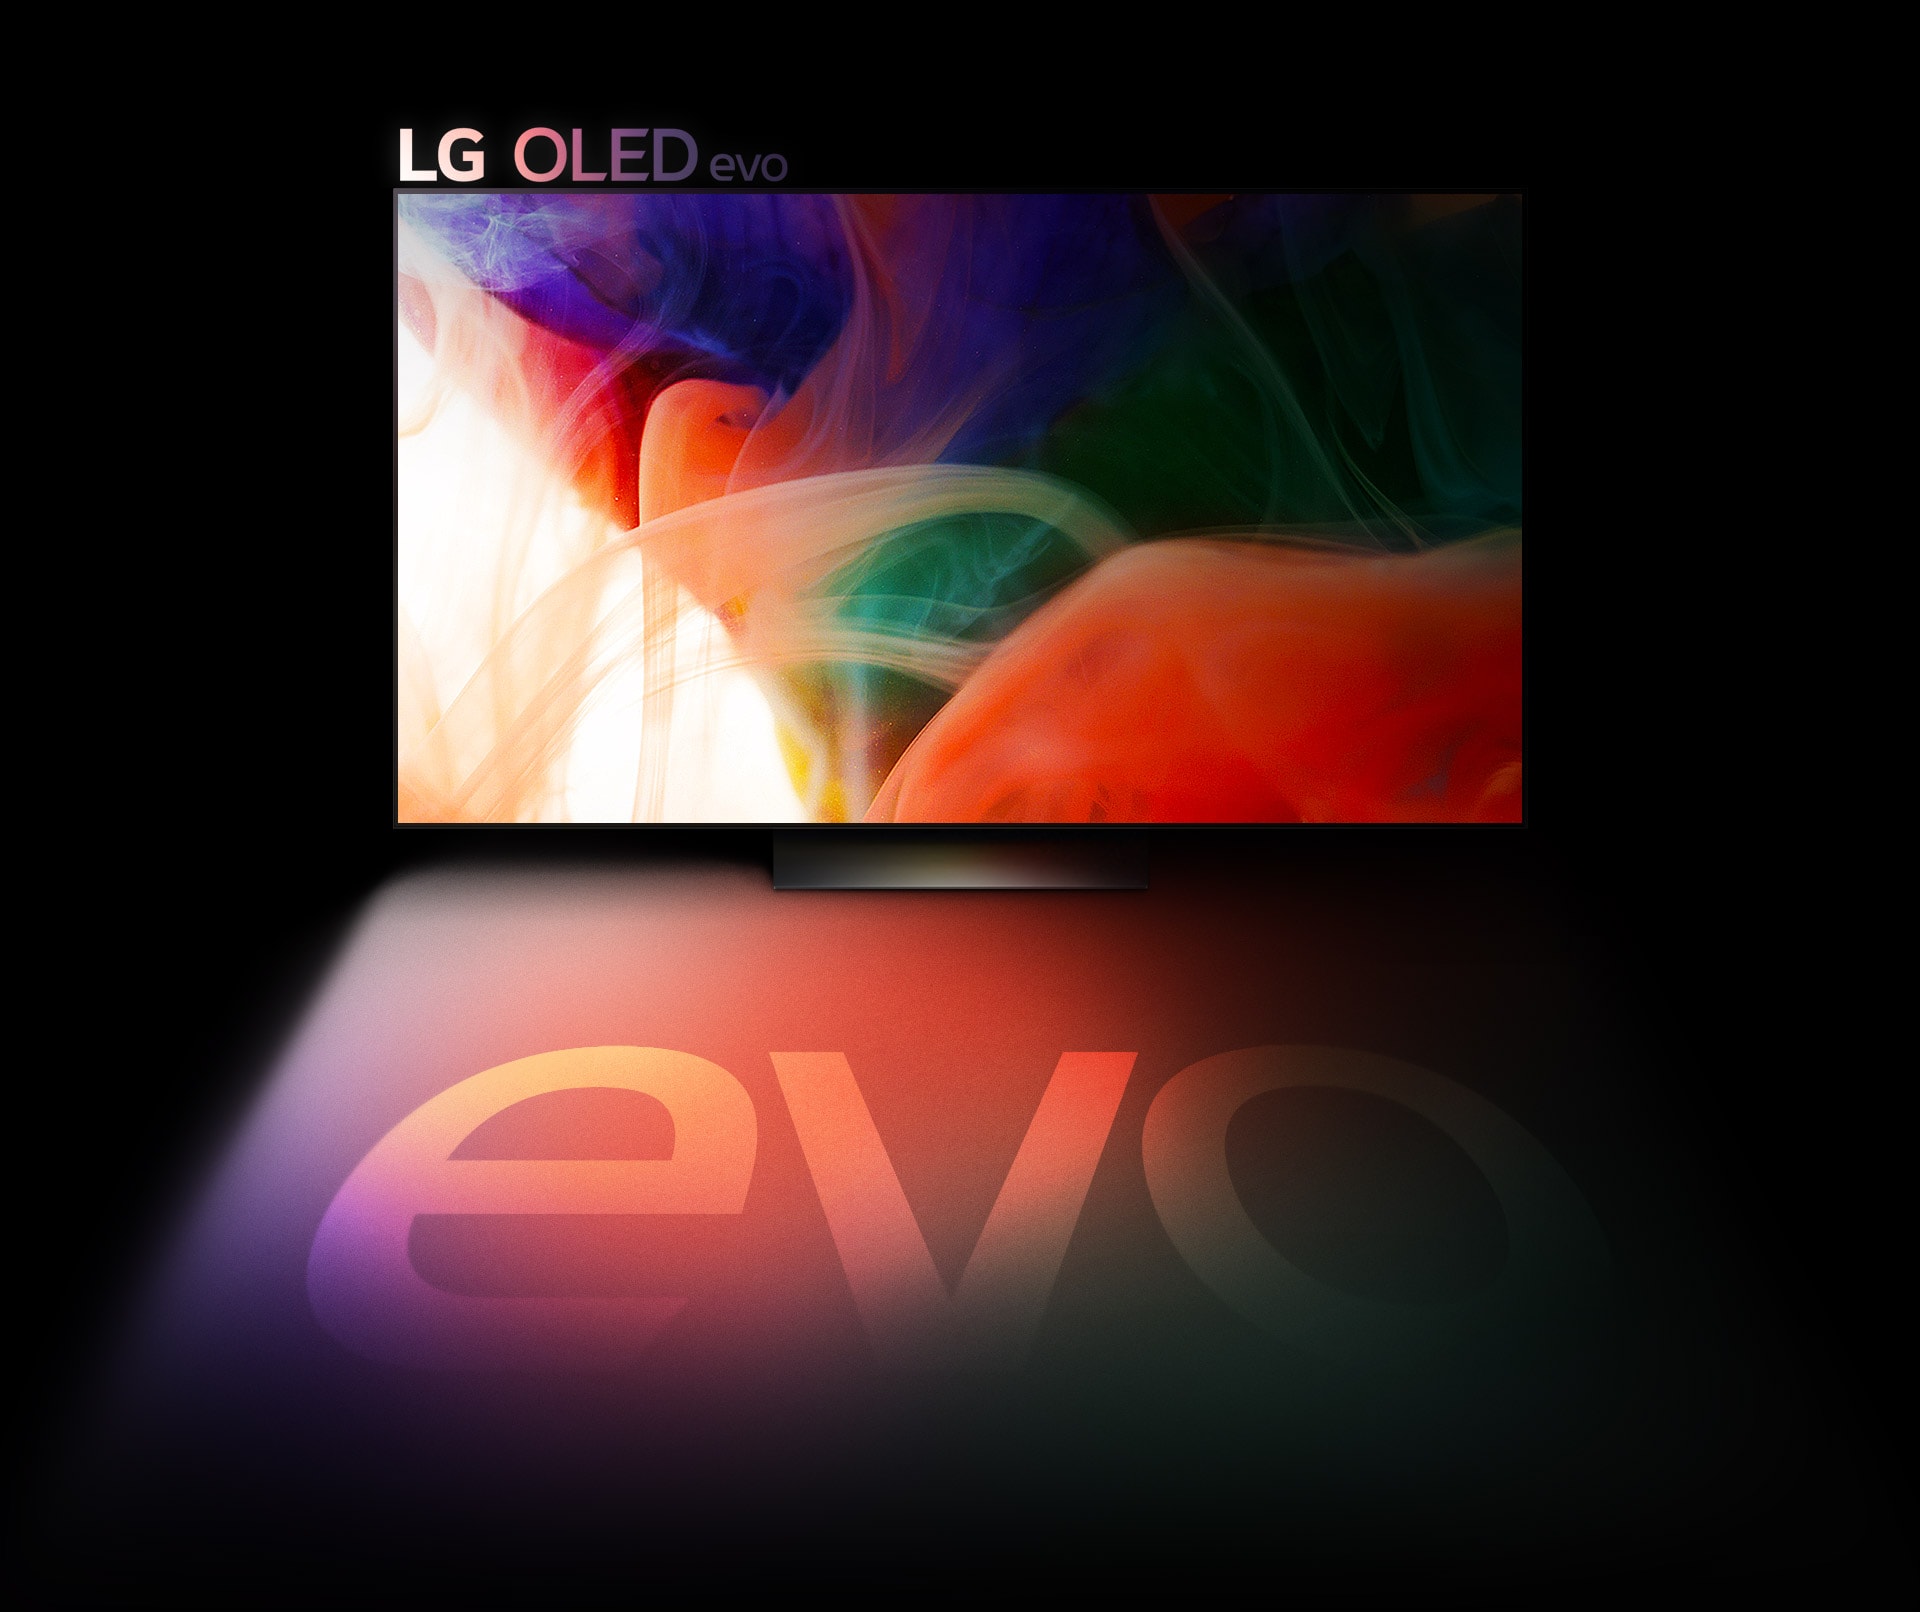 Une image abstraite et pleine de couleurs s’affiche sur un téléviseur OLED evo de LG